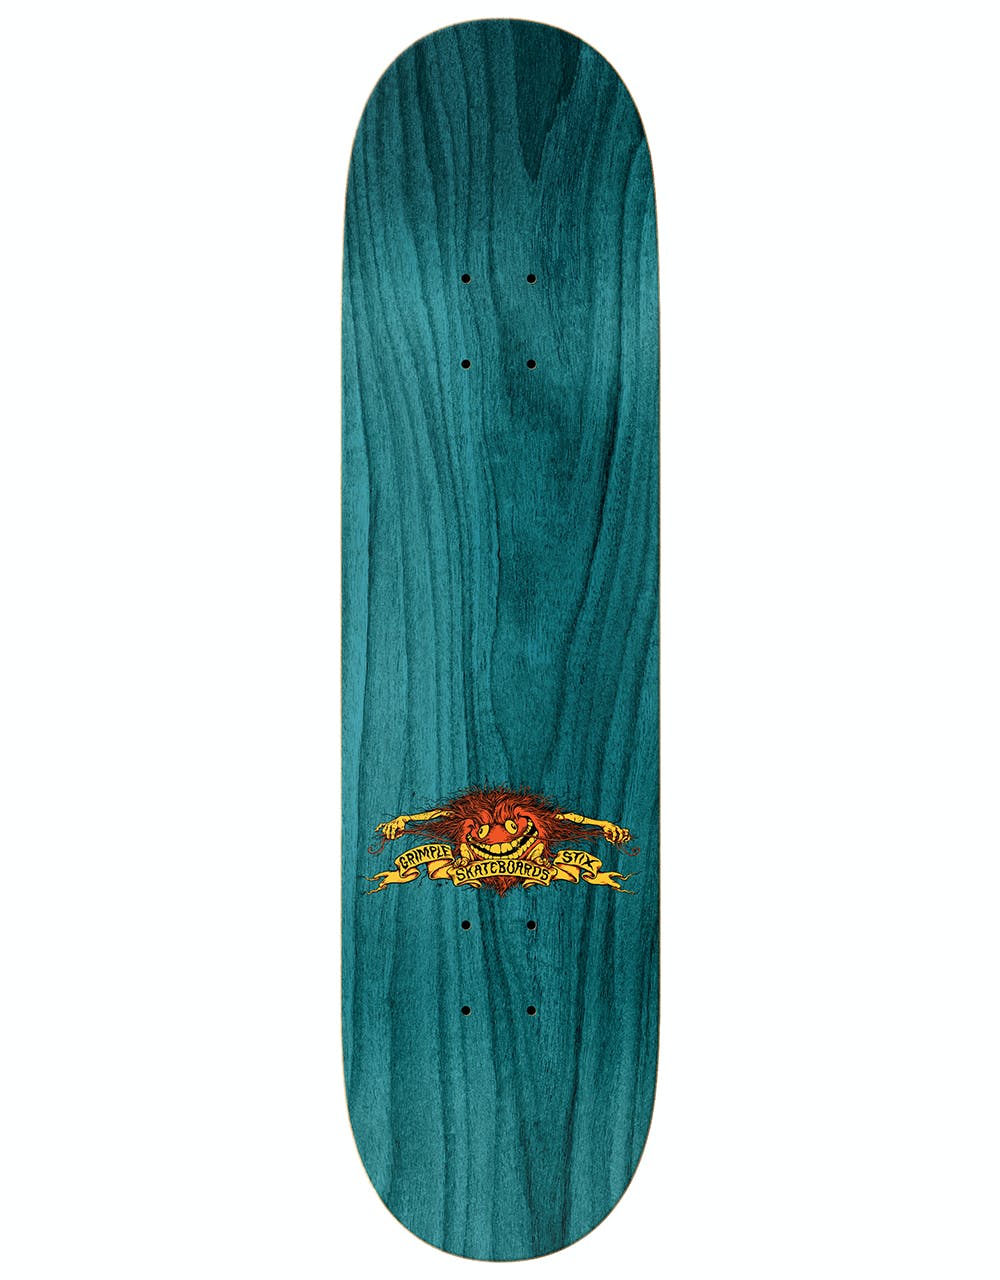 Grimple Stix (Anti Hero) Gerwer Collab Skateboard Deck - 8.06"